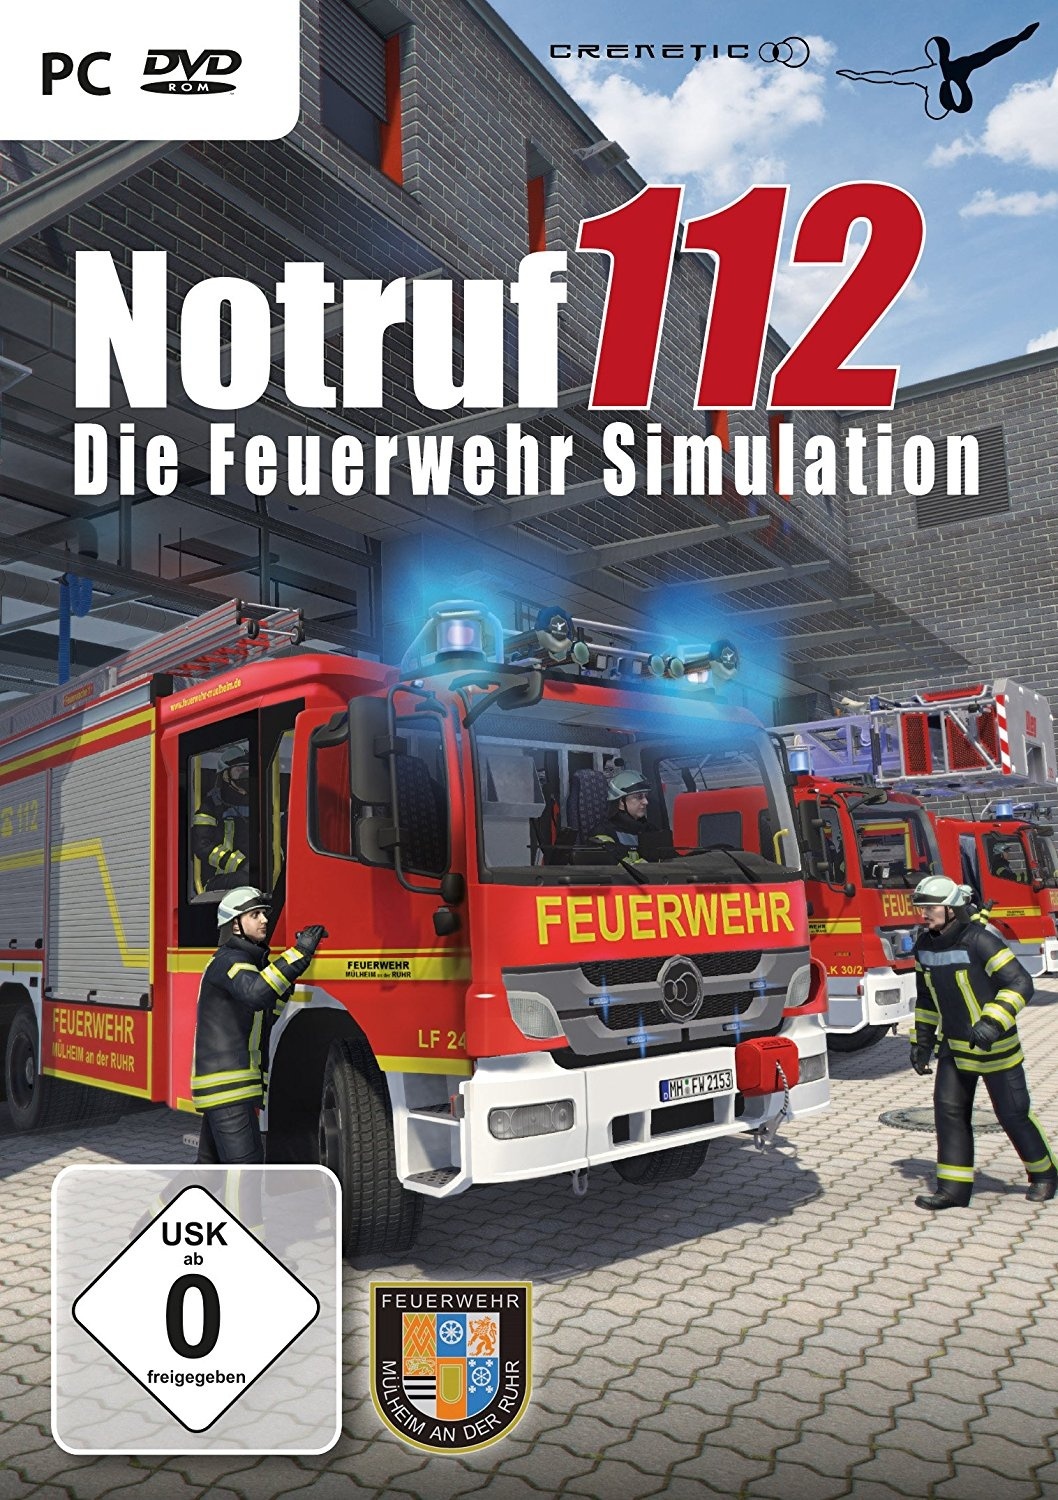 Die Feuerwehr Simulation - Notruf 112 - Release, News, Systemanforderungen